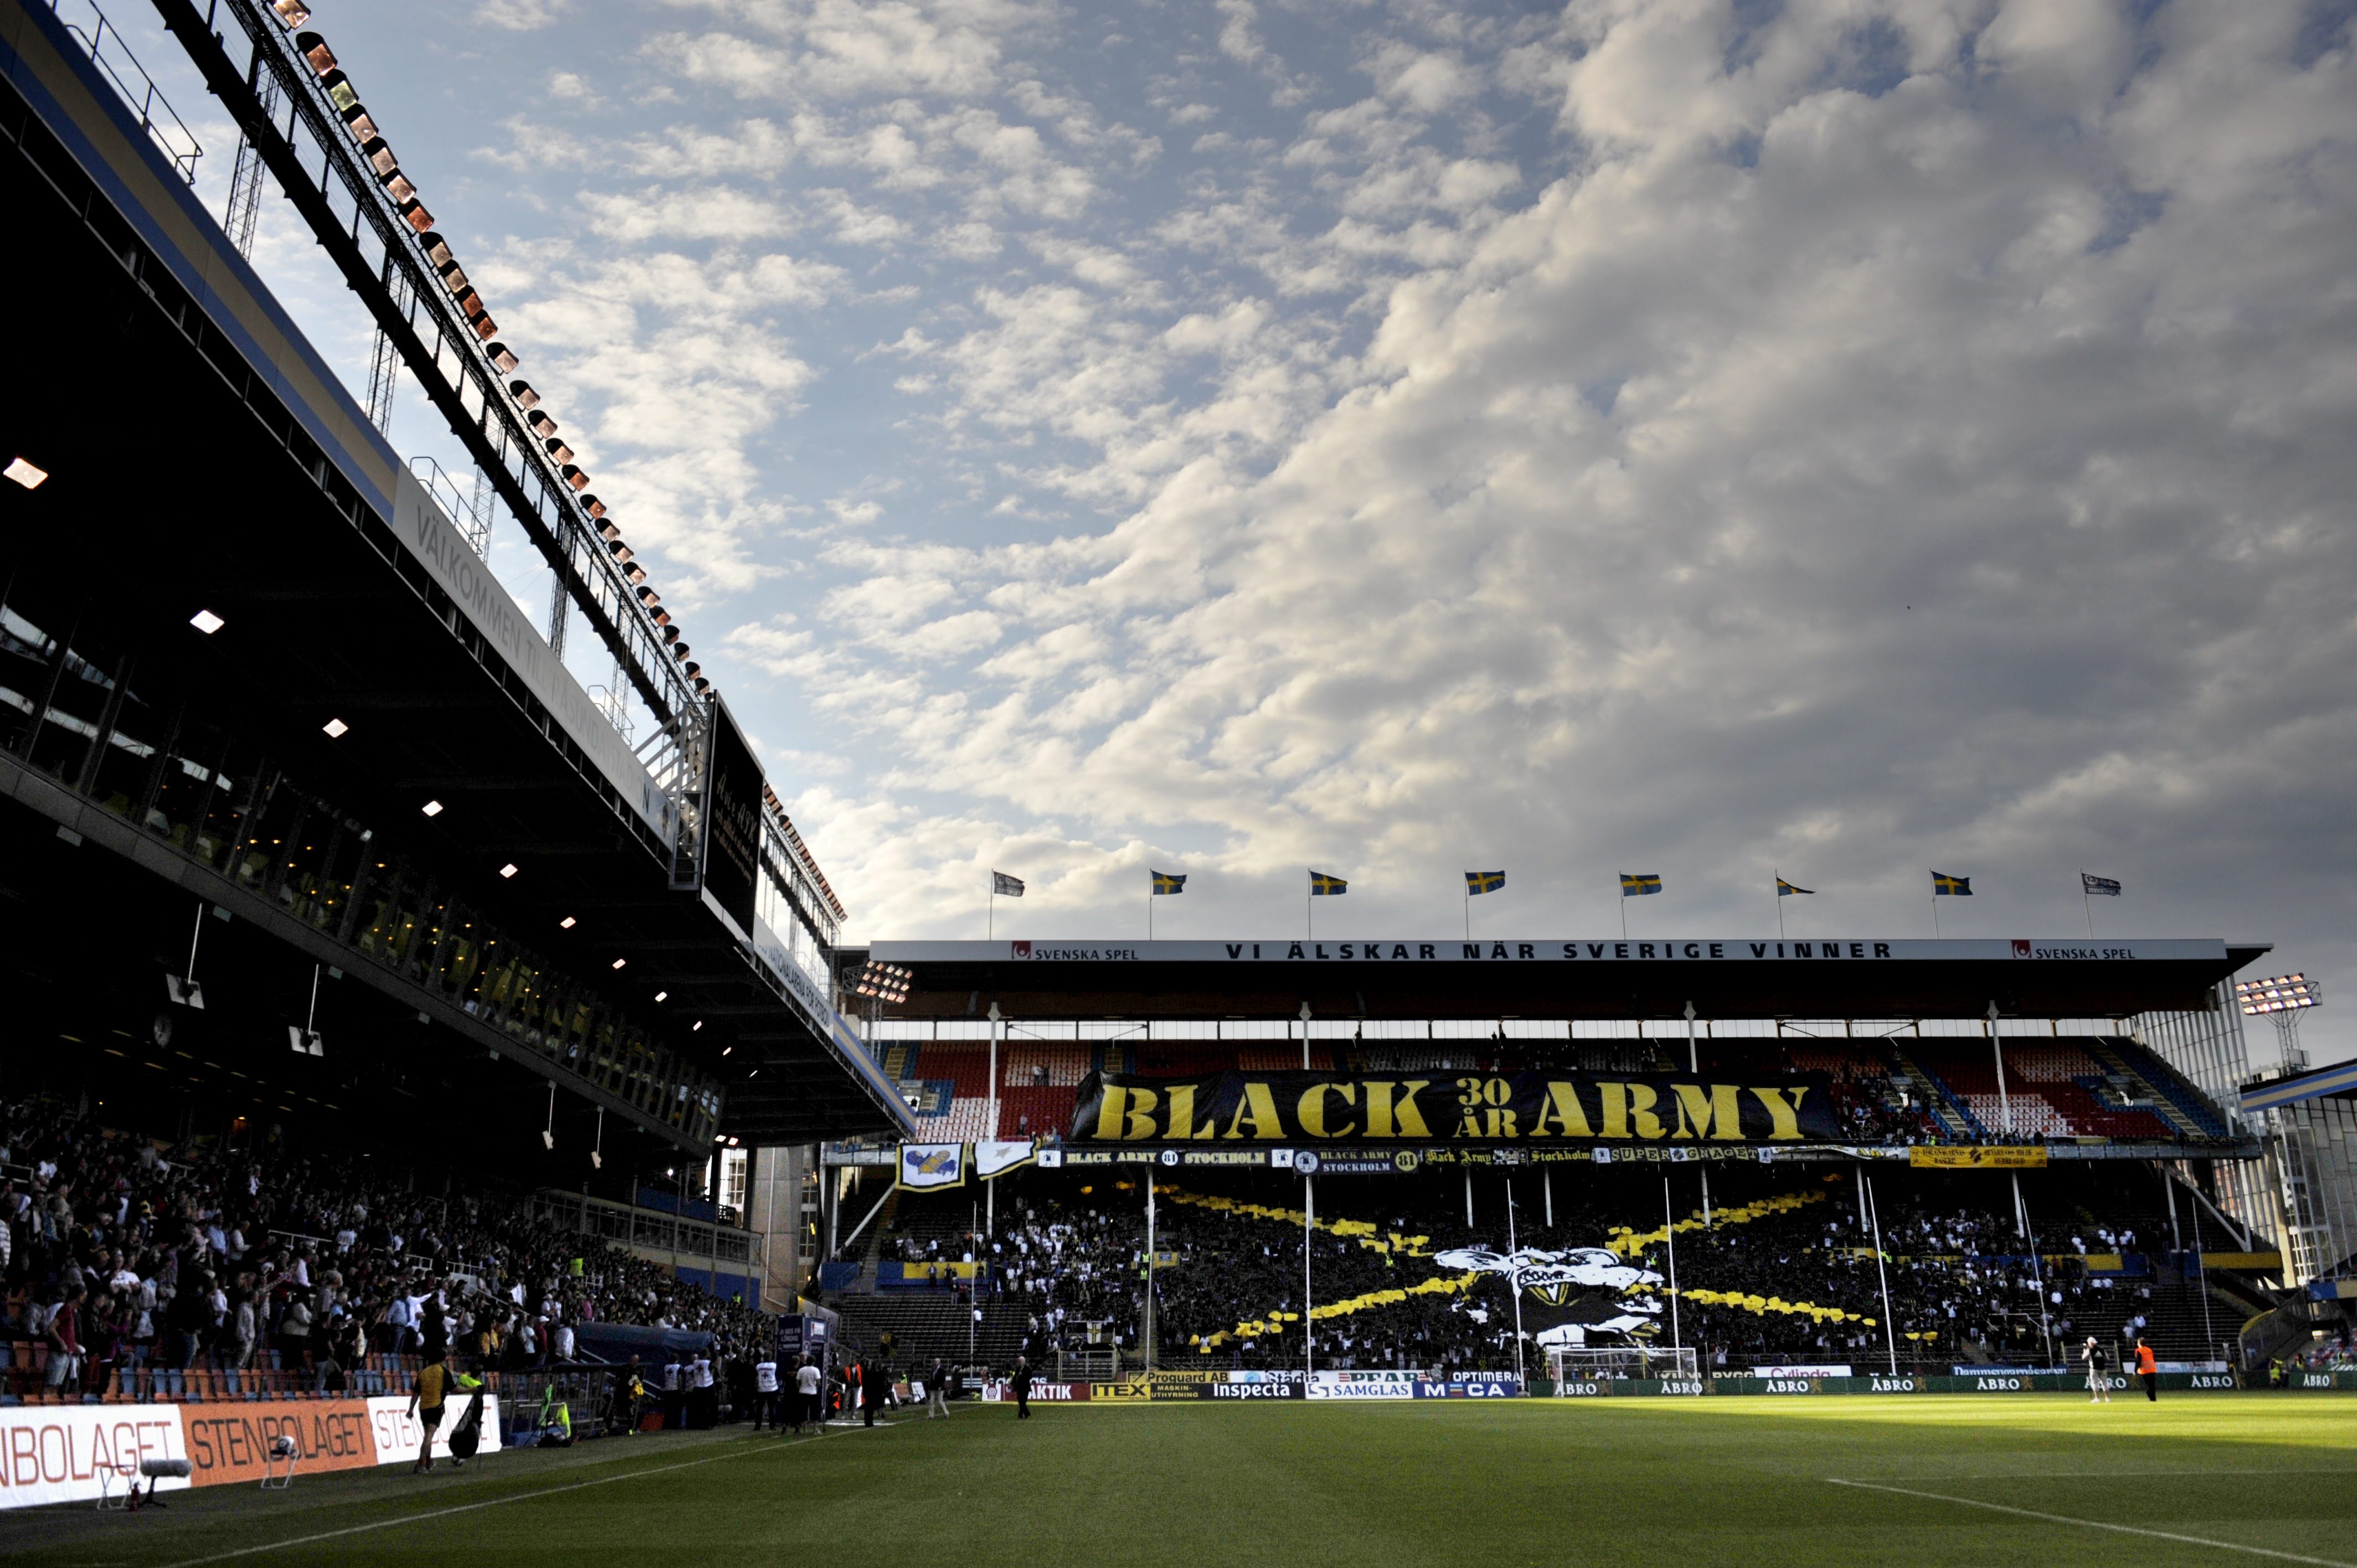 Black Army visade upp sig från sin bästa sida under söndagens match mot Malmö FF. Ändå blev klacken anmäld av matchdelegaten Göran Lundberg. Anledningen uppges vara en nidramsa riktade mot domare Martin Hansson.